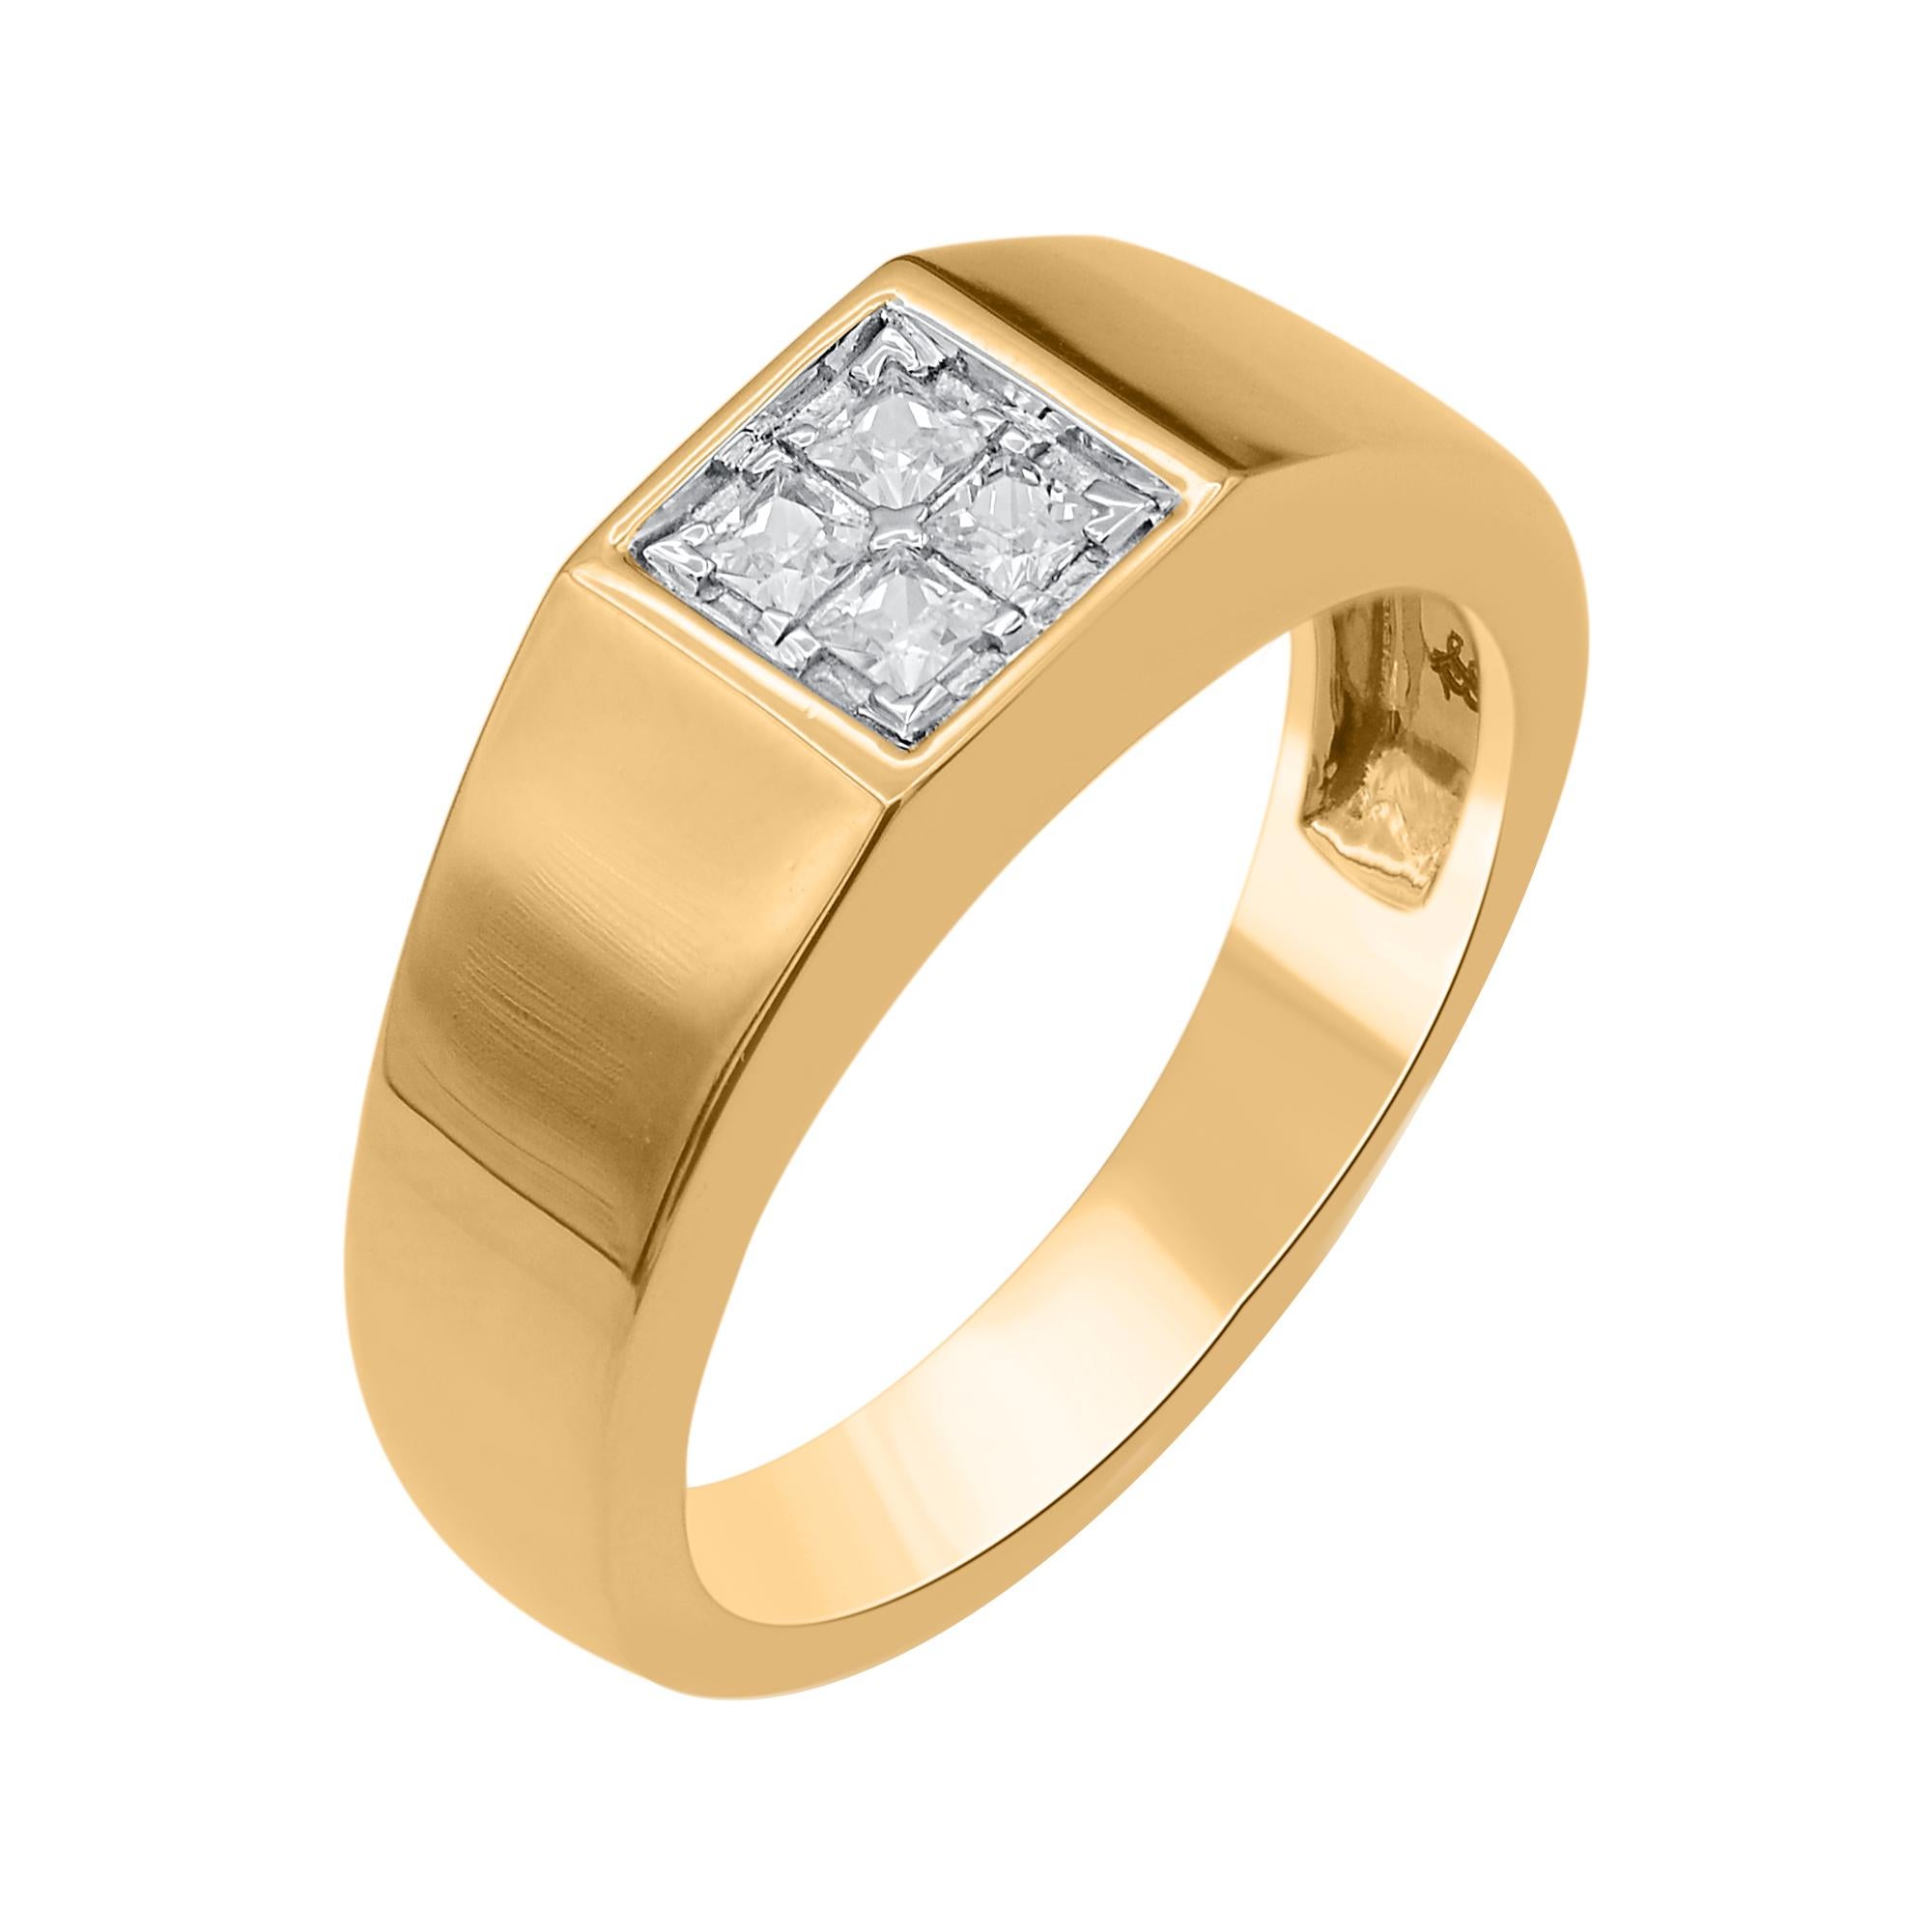 Erhöhen Sie Ihren raffinierten Stil, wenn Sie diesen Diamantring für Männer aus 14 K Gelbgold tragen. Diese Bandringe sind mit 4 natürlichen Diamanten im Prinzessschliff von 0,30 Karat besetzt. Die weißen Diamanten sind mit der Farbe H-I und der